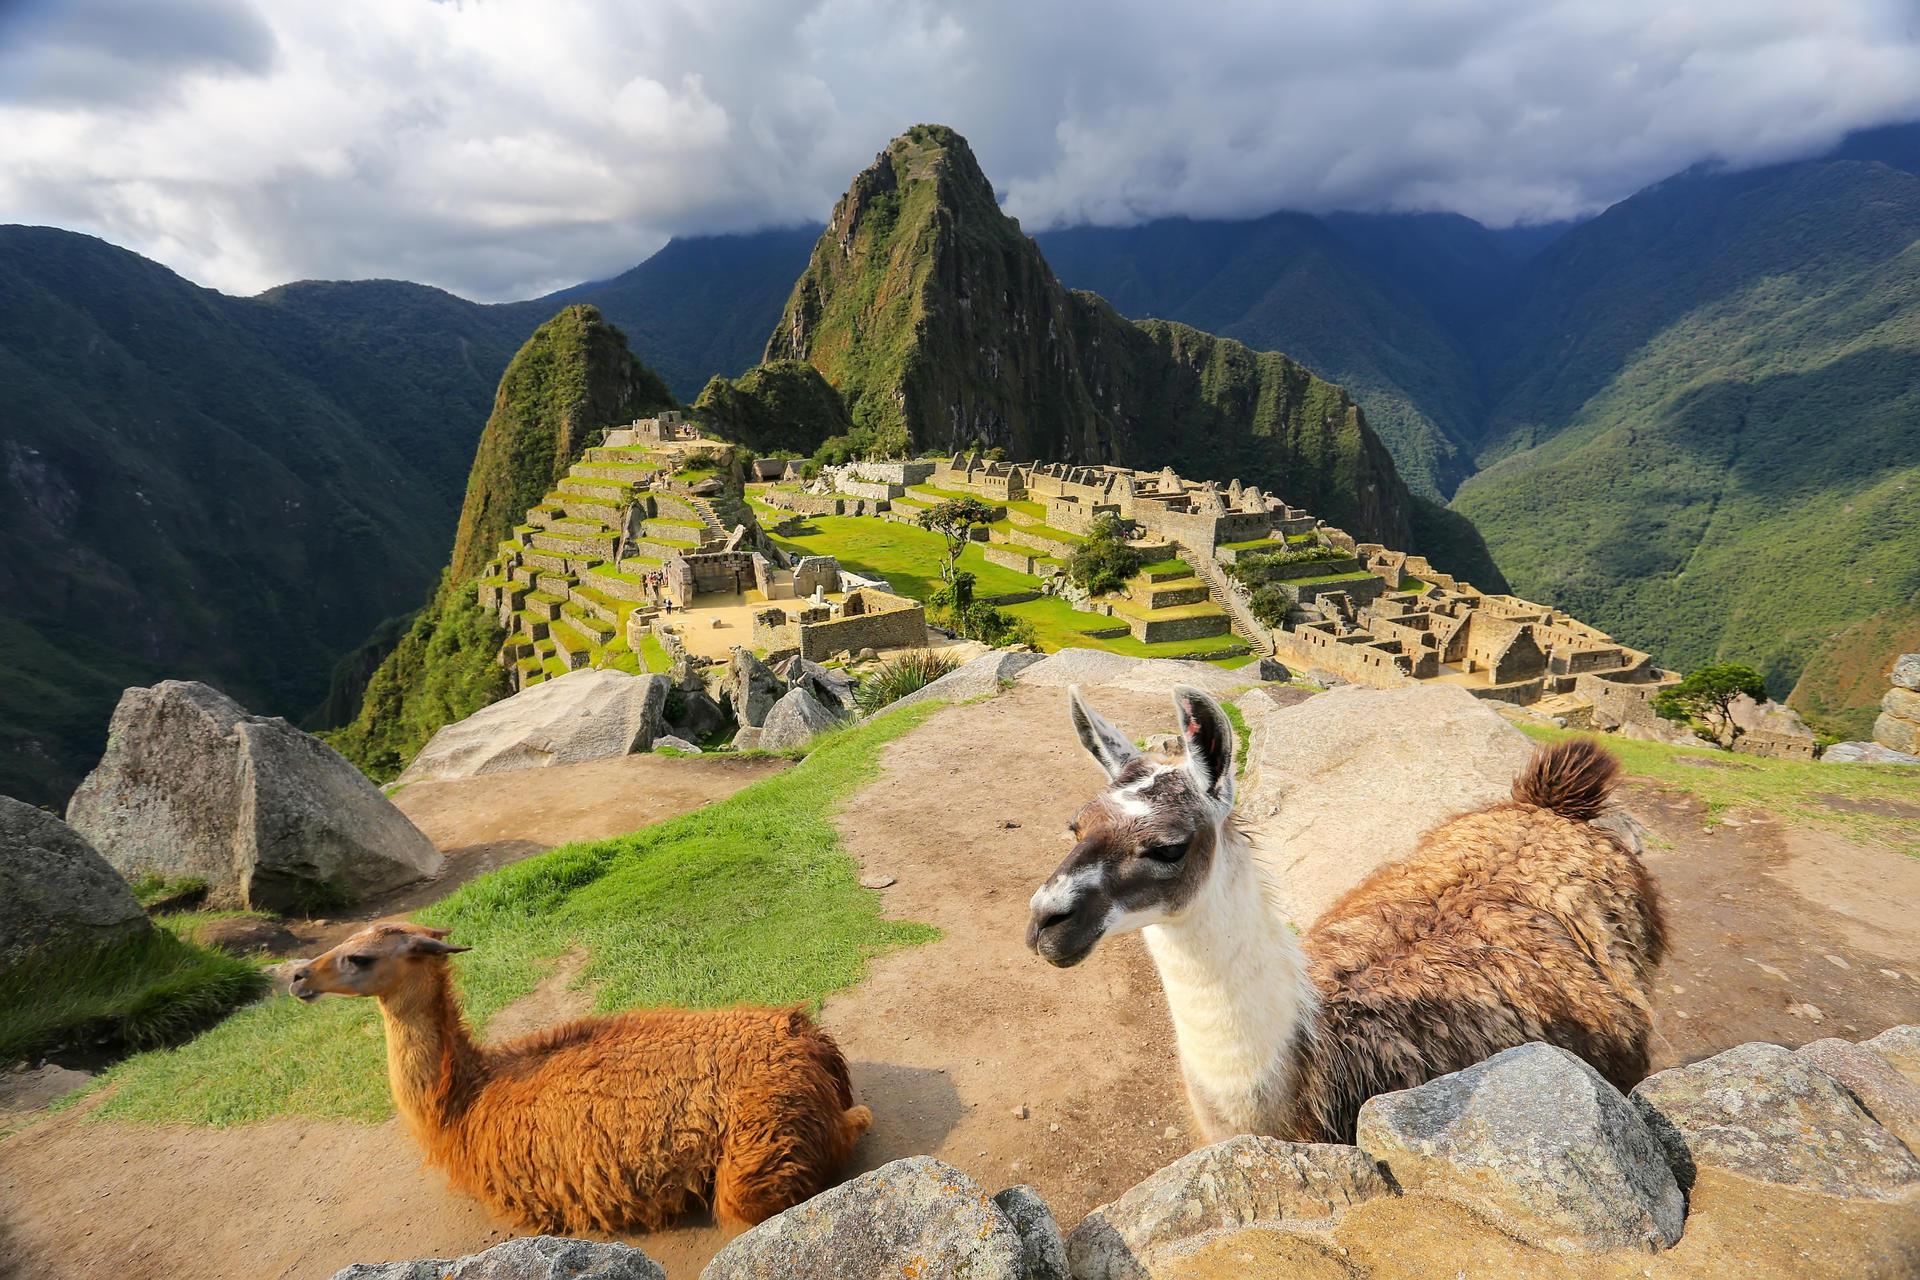 Llamas standing at Machu Picchu overlook in Peru